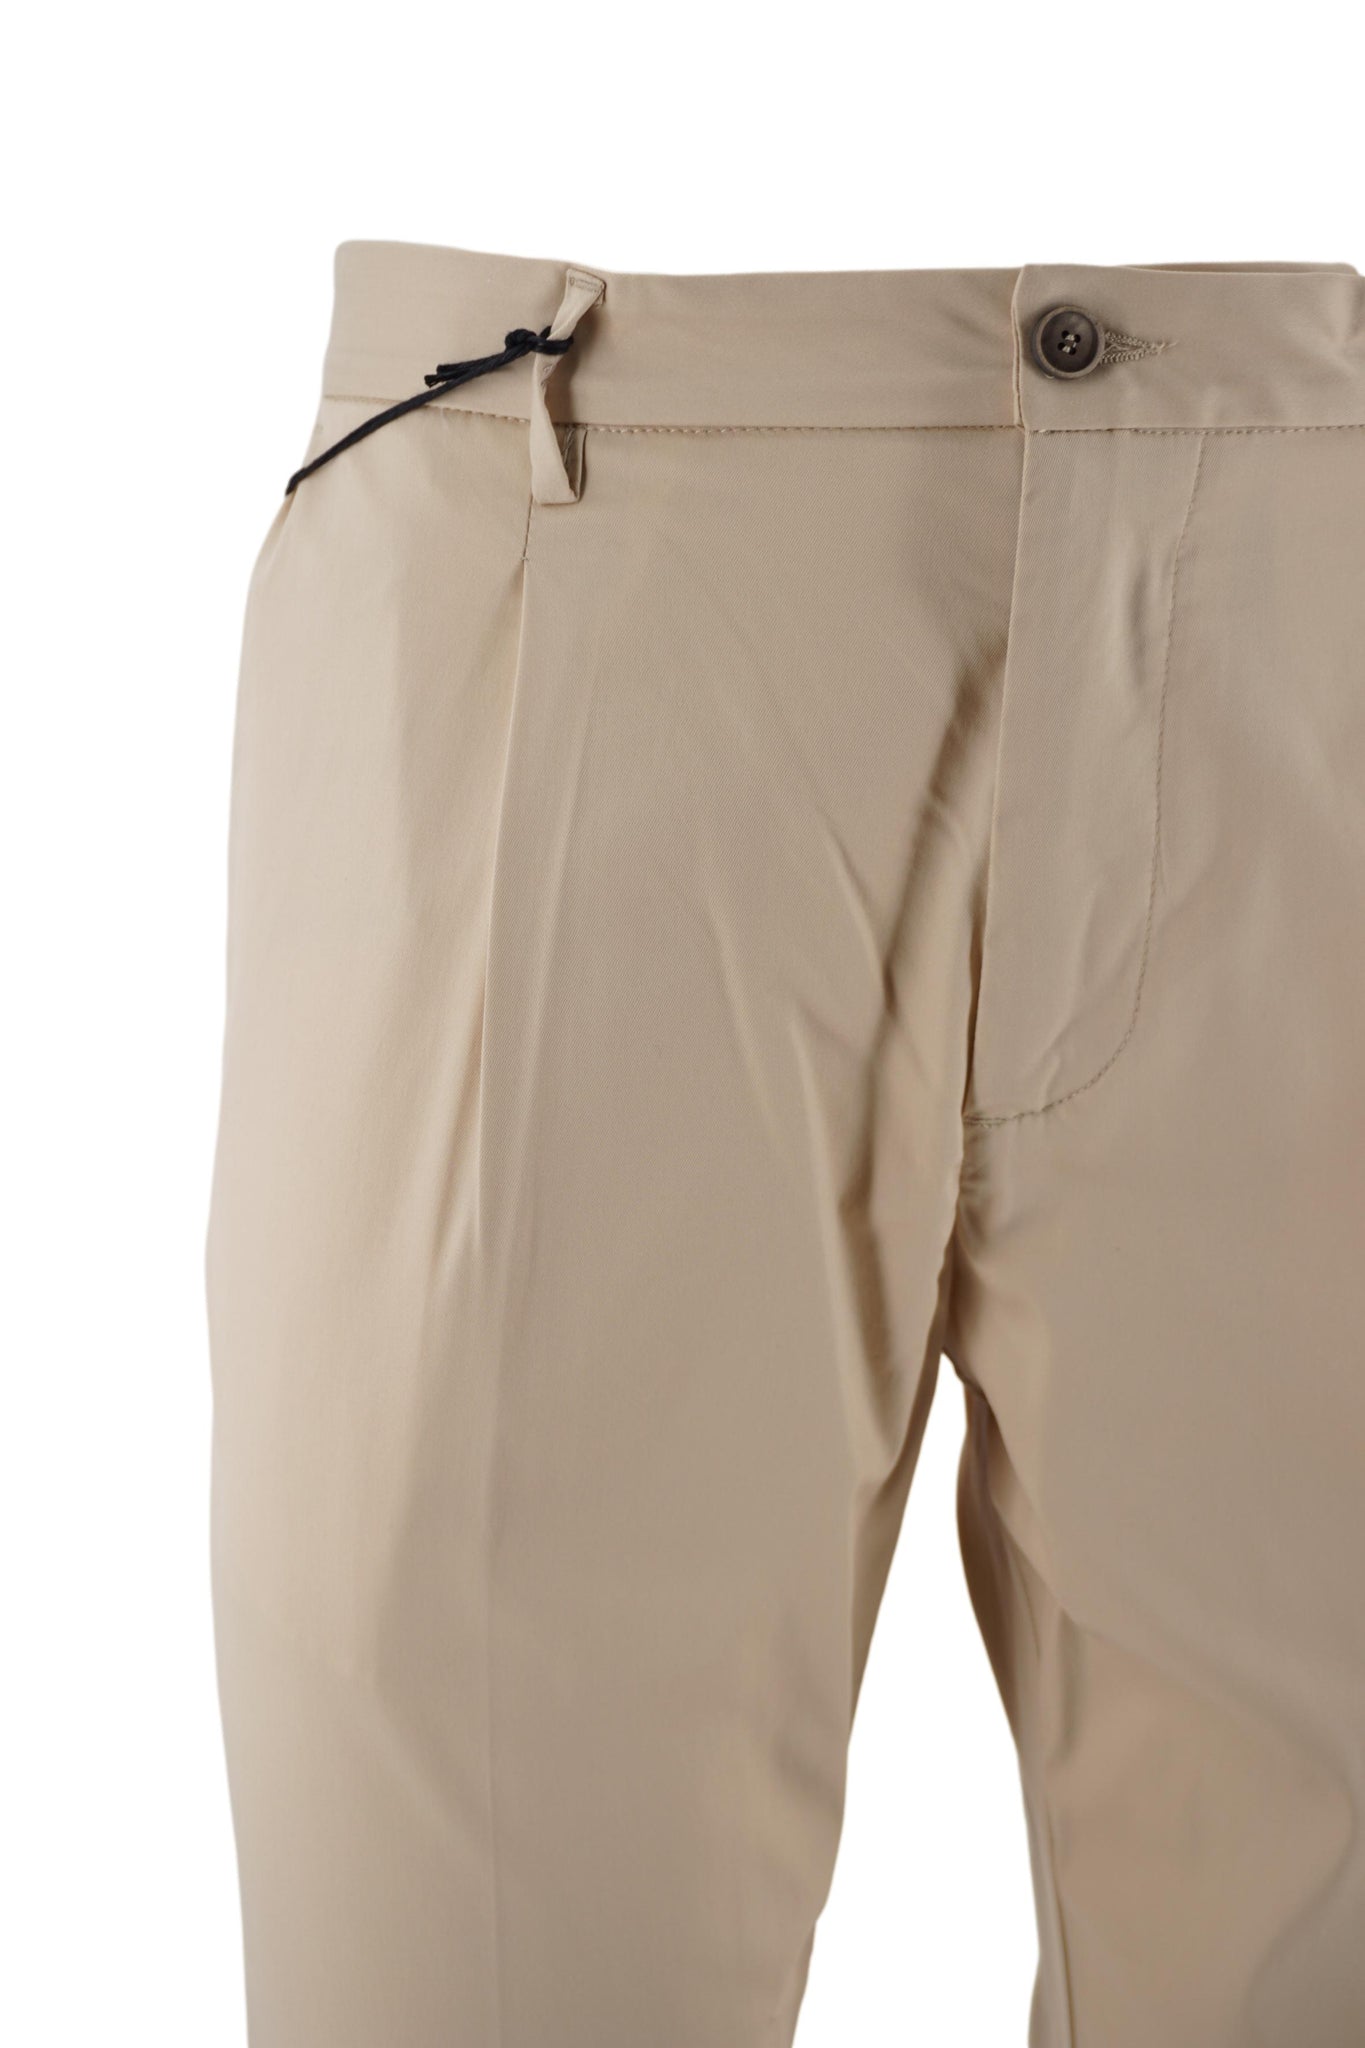 Pantalone con Mezzo Elastico in Vita / Beige - Ideal Moda